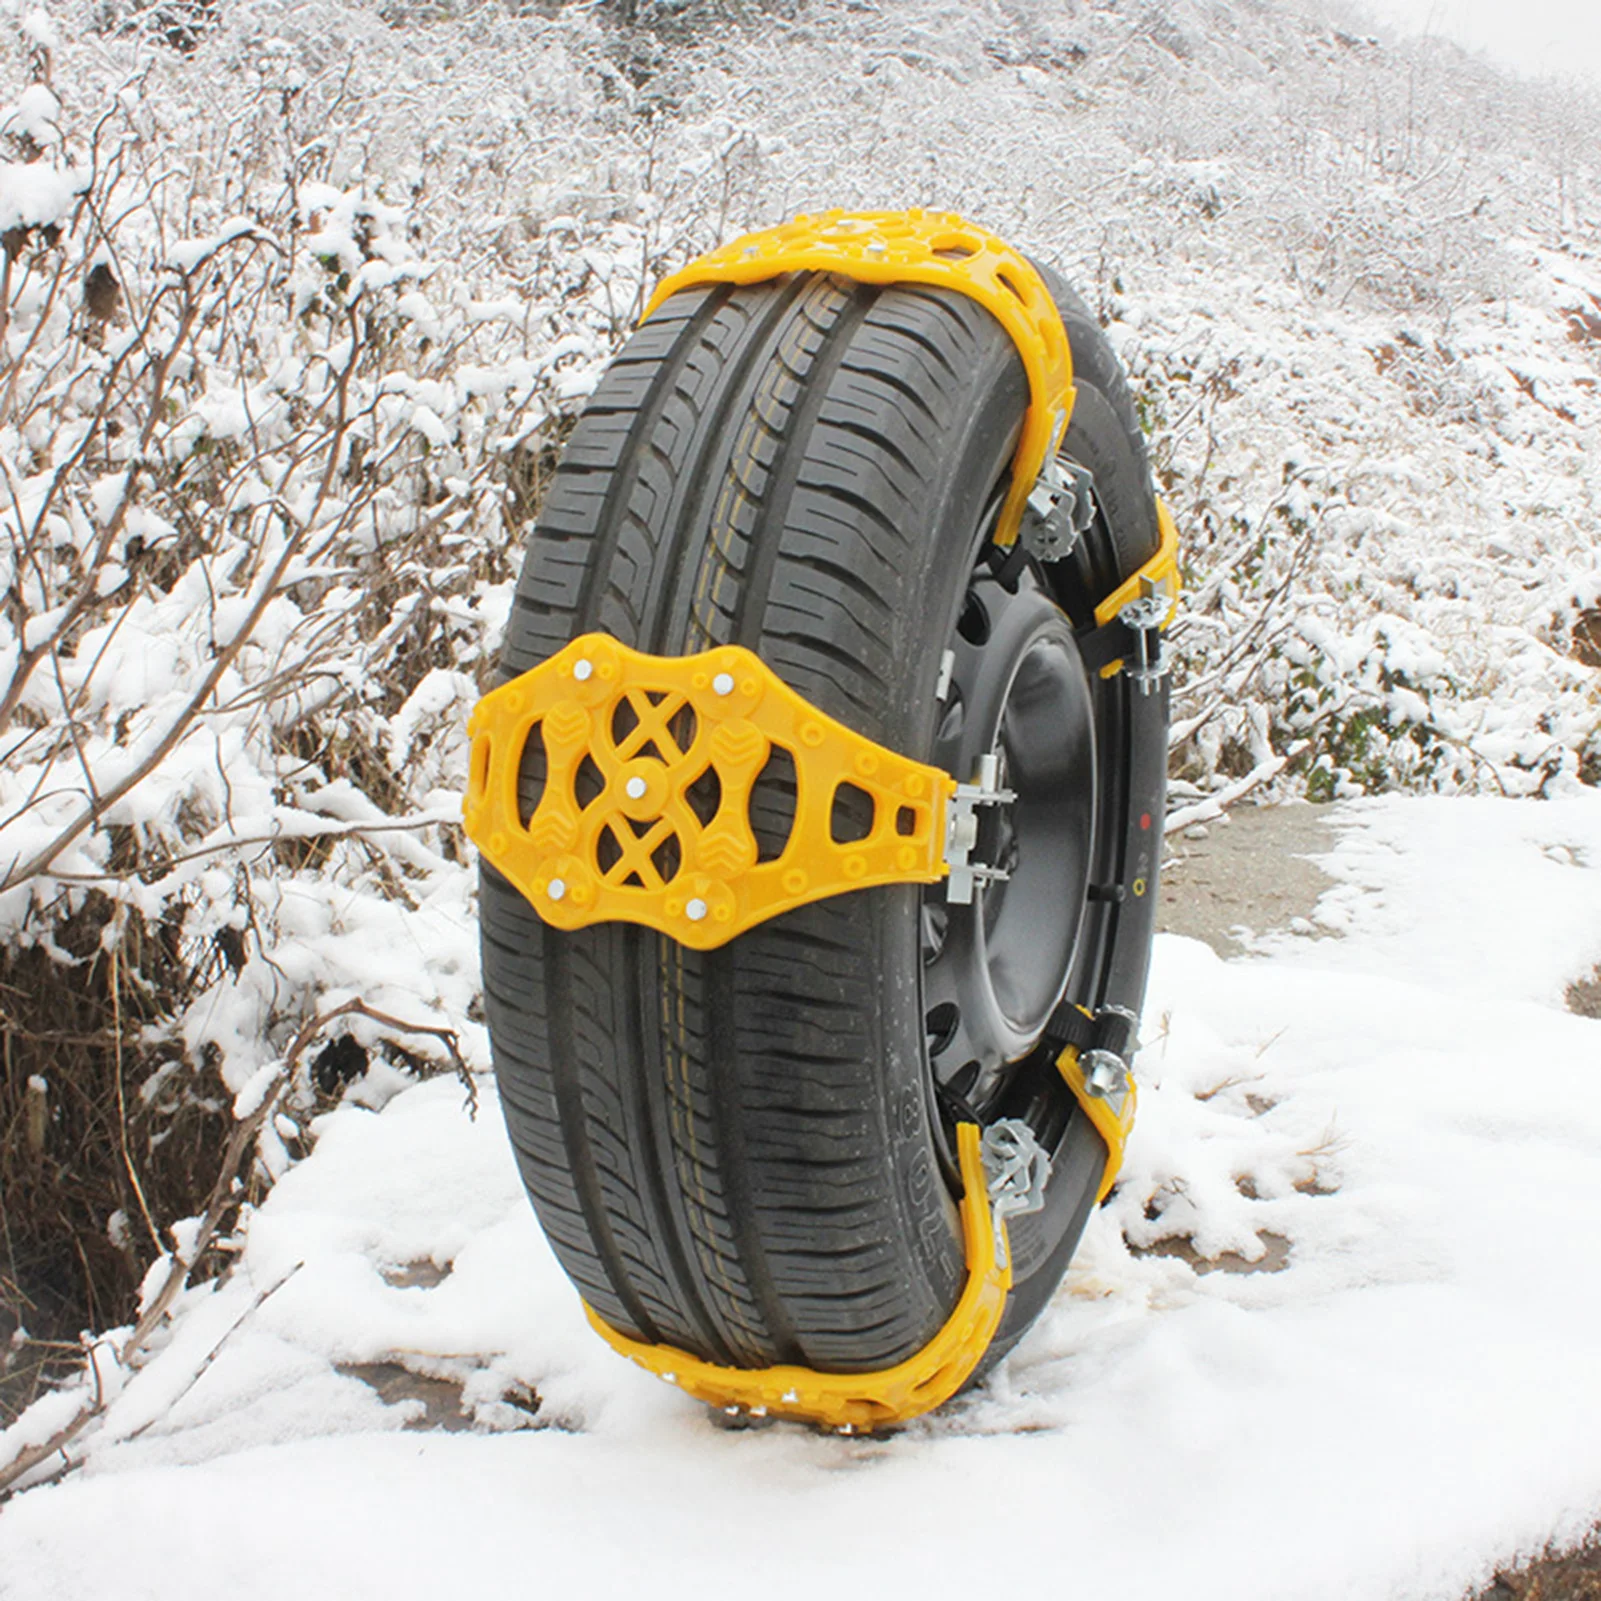 

1 шт. автомобильные цепи для снега противоскользящая аварийная цепь для тяги автомобильных шин универсальная утолщенная ТПУ зимняя Автомоб...